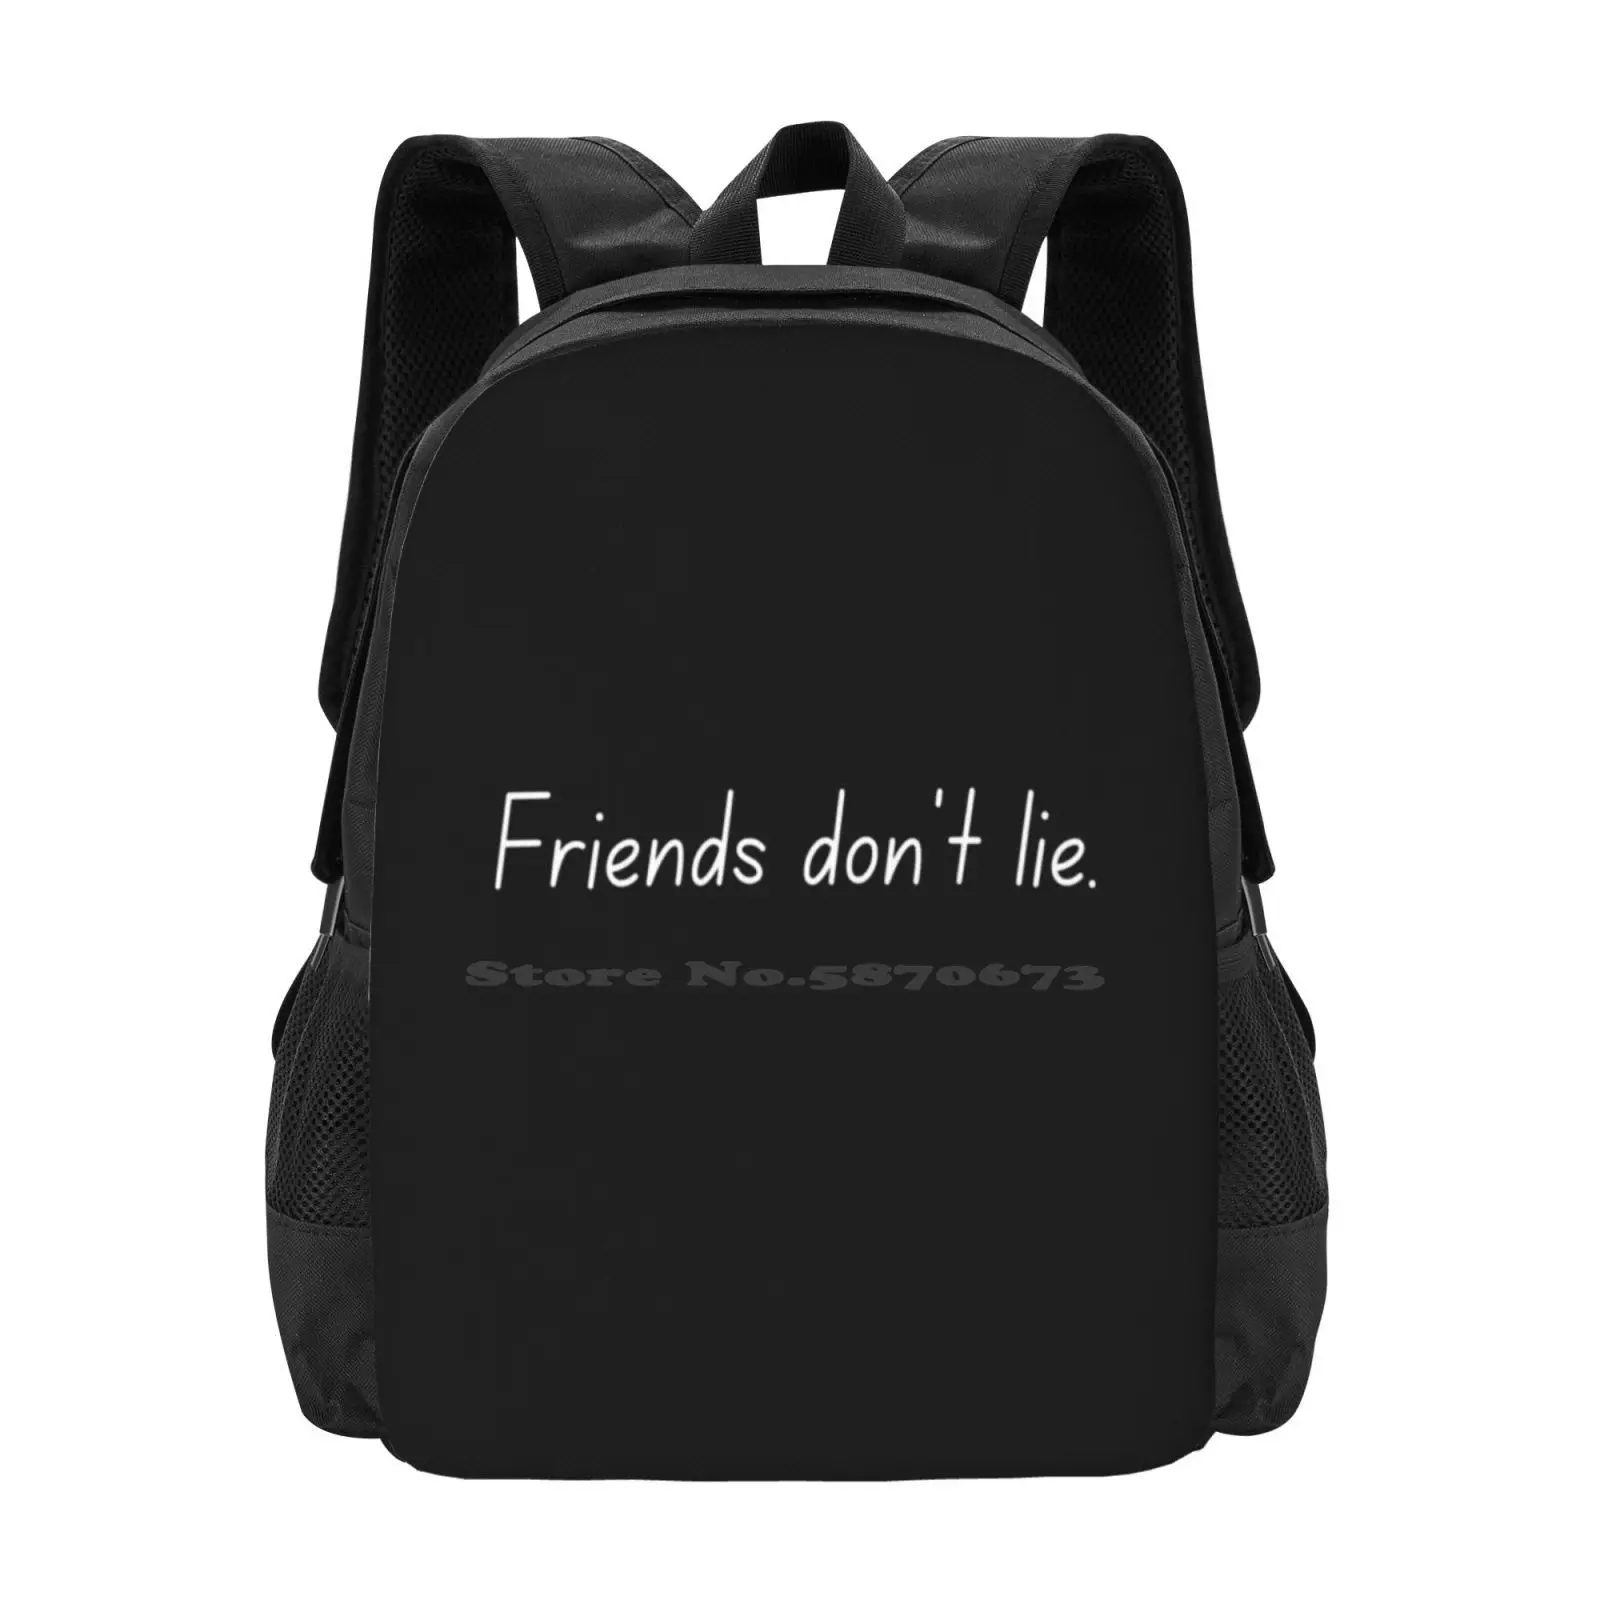 

Friends Don'T Lie. - School Bags For Teenage Girls Laptop Travel Bags Friends Dont Lie Quote Show Netflix Show Friends Dont Lie